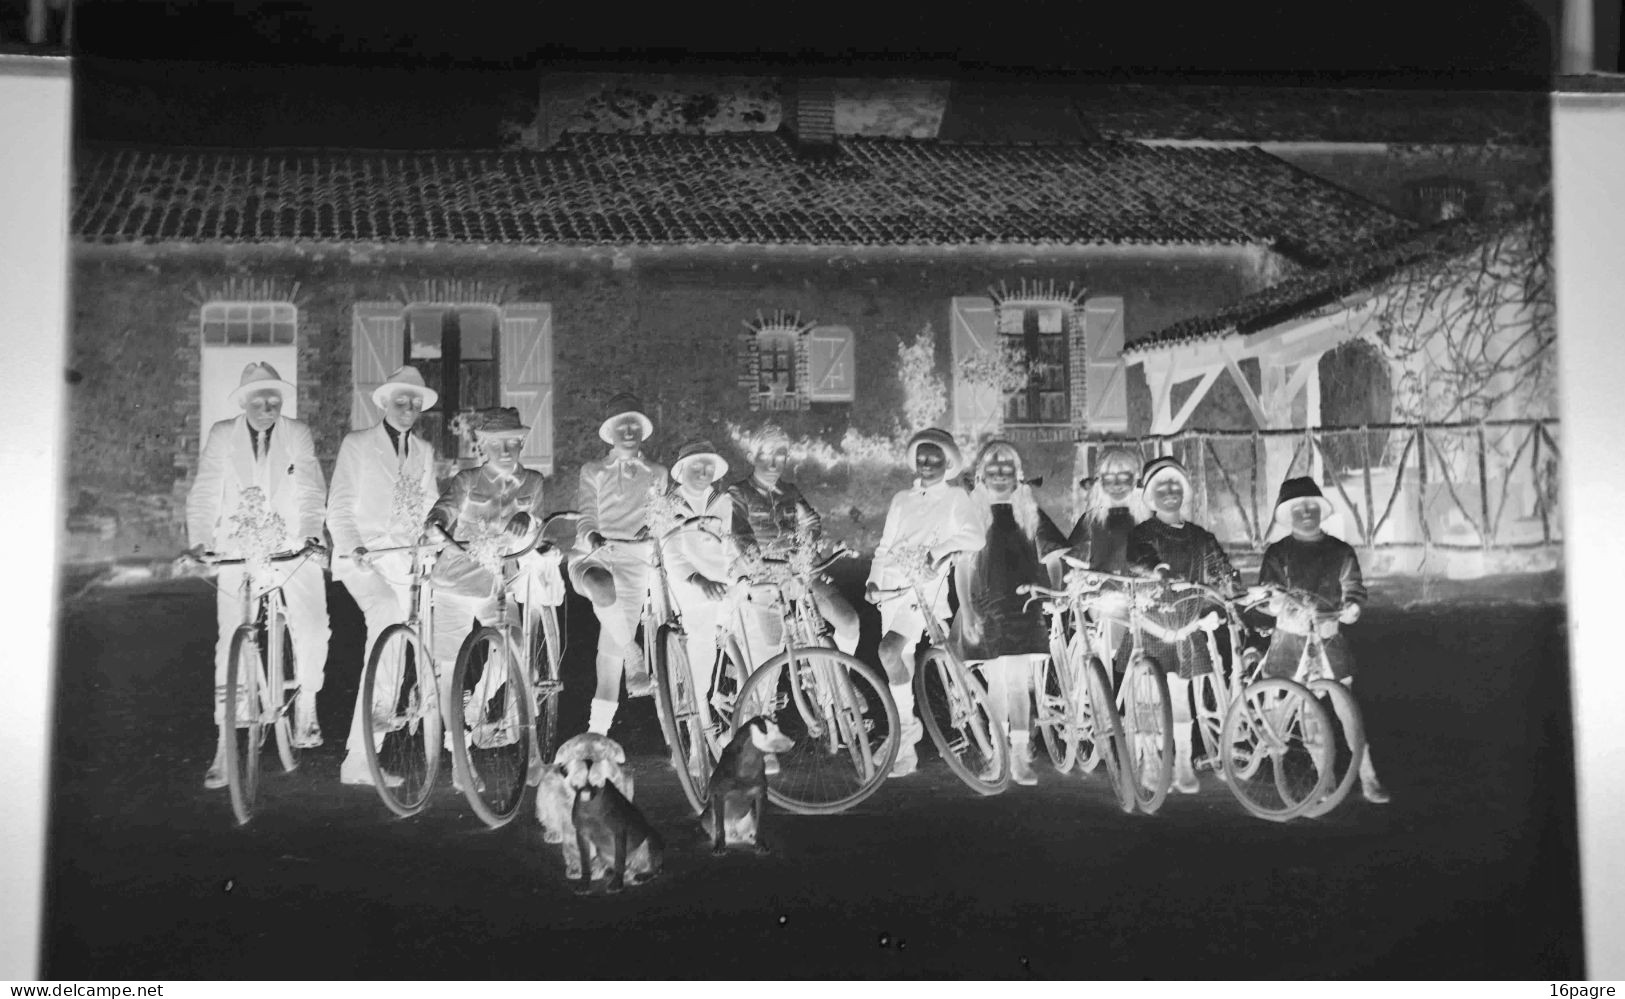 LOT DE TROIS GRANDES PLAQUES DE VERRE. GROUPE DE JEUNES CYCLISTES. MACHECOUL.CHIENS, LOIRE-ATLANTIQUE. 1950 - Glasplaten